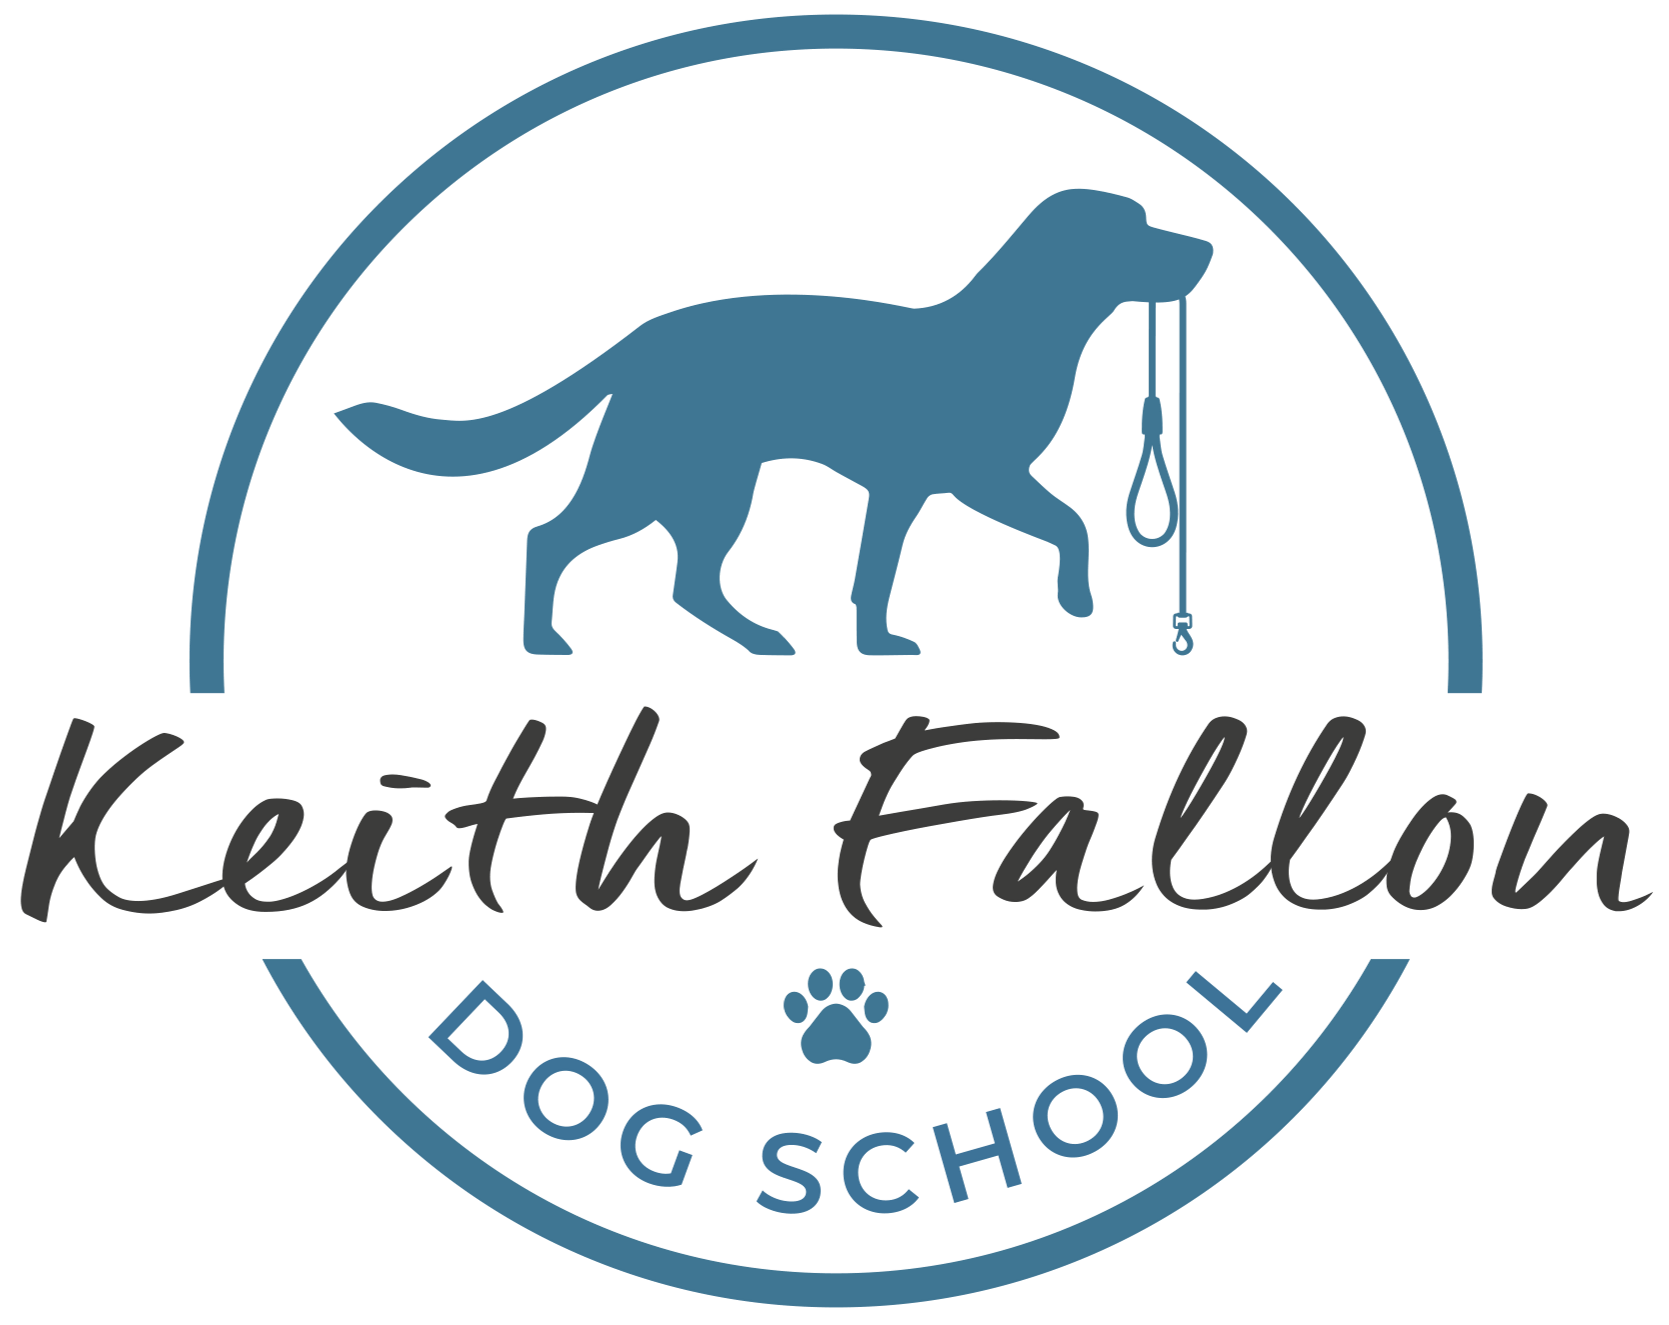 Keith Fallon Dog School